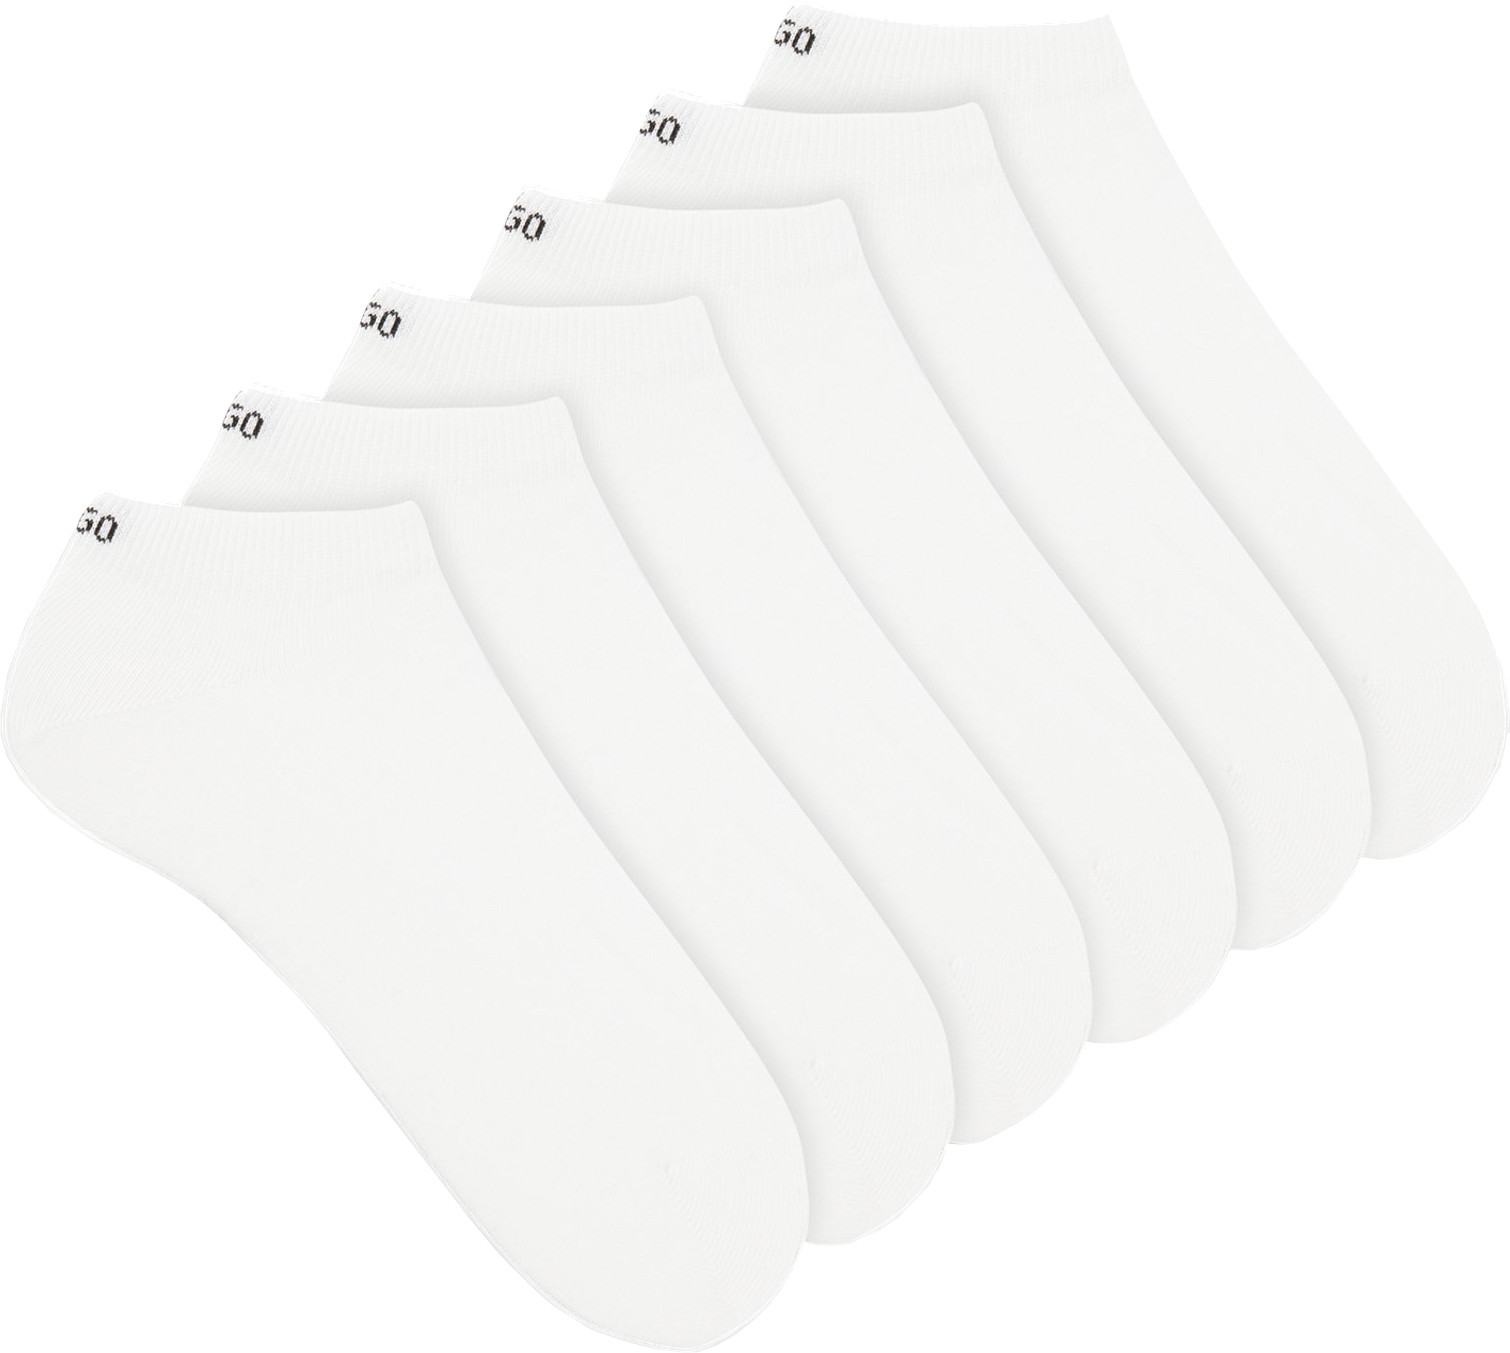 Hugo Boss 6 PACK - pánské ponožky HUGO 50480223-100 43-46